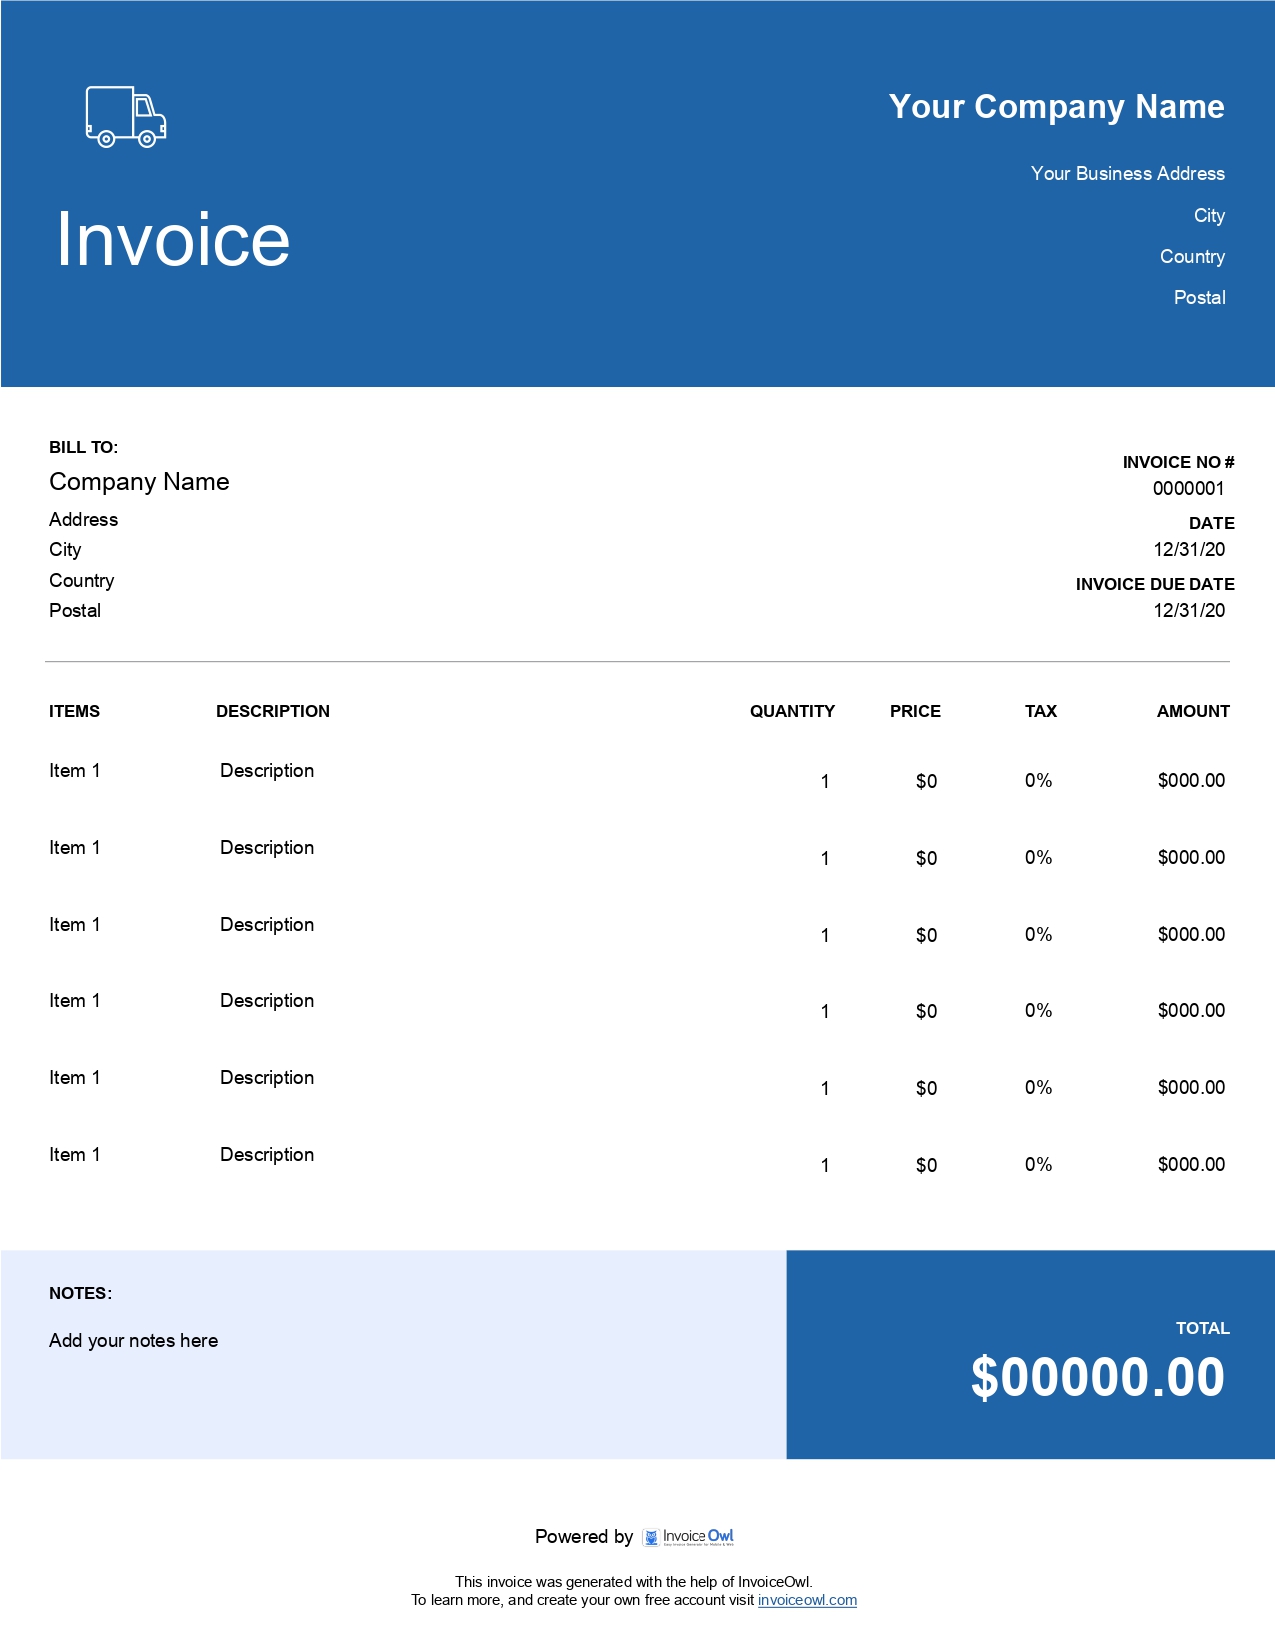 Enterprise invoice invoice template